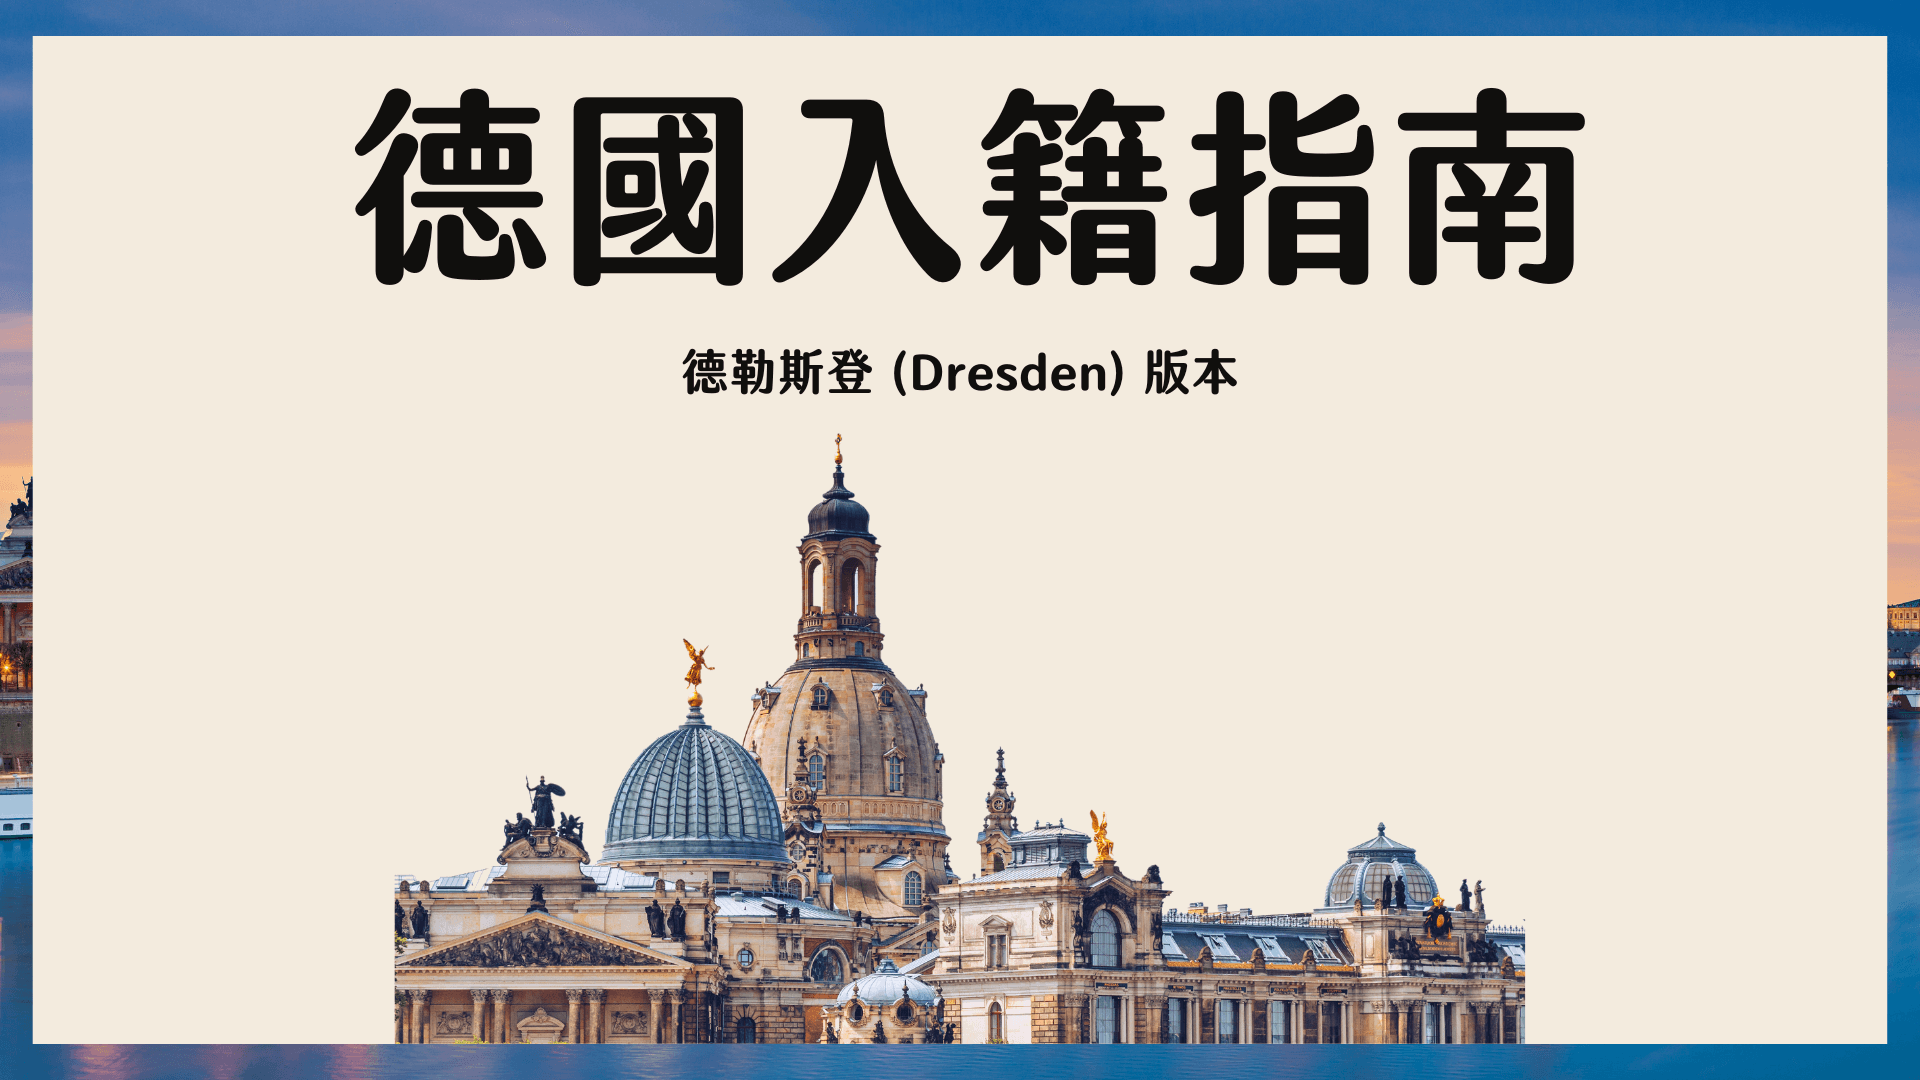 德國 Anmeldung 入籍教學 (預約流程、文件) 德勒斯登 Dresden